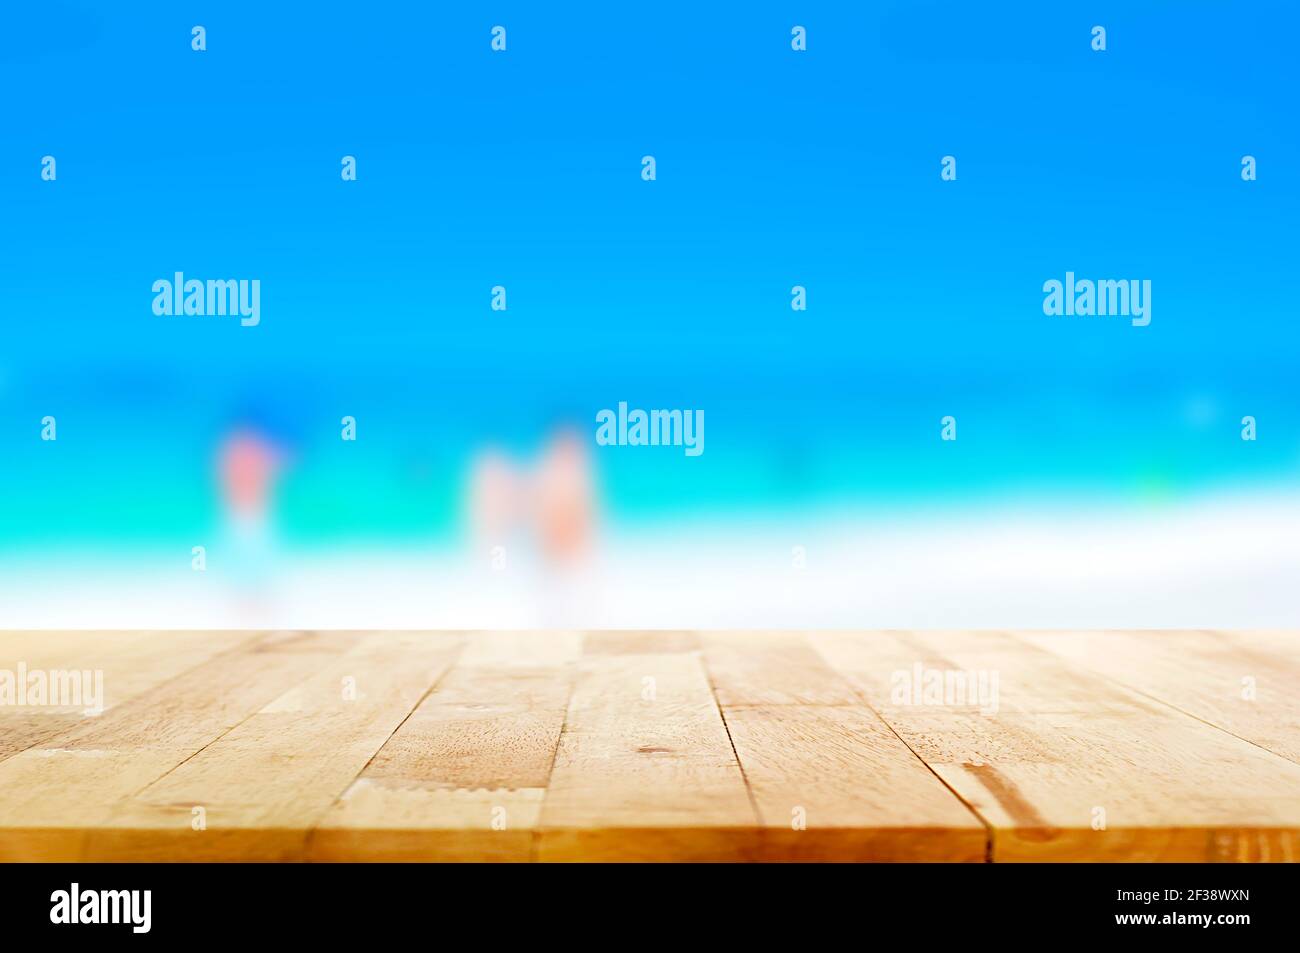 Holztischplatte auf verschwommenem weißen Sandstrand und blau Meereshintergrund - kann zur Anzeige oder Montage verwendet werden Ihre Produkte Stockfoto